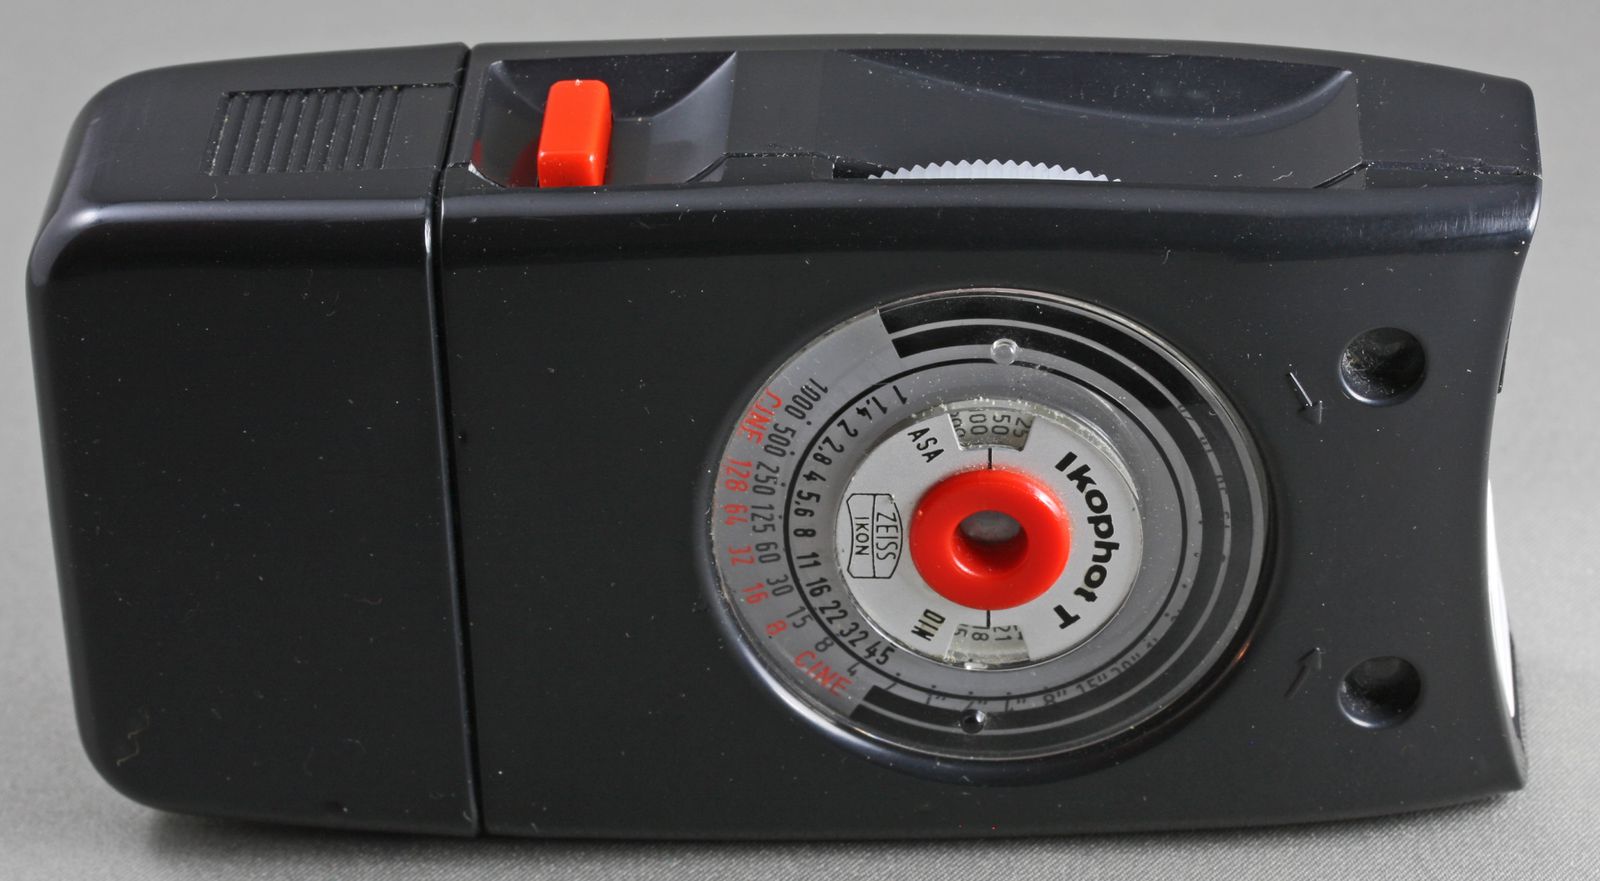 Un posemètre modèle Ikophot de la marque : Zeiss Ikon, made in Germany